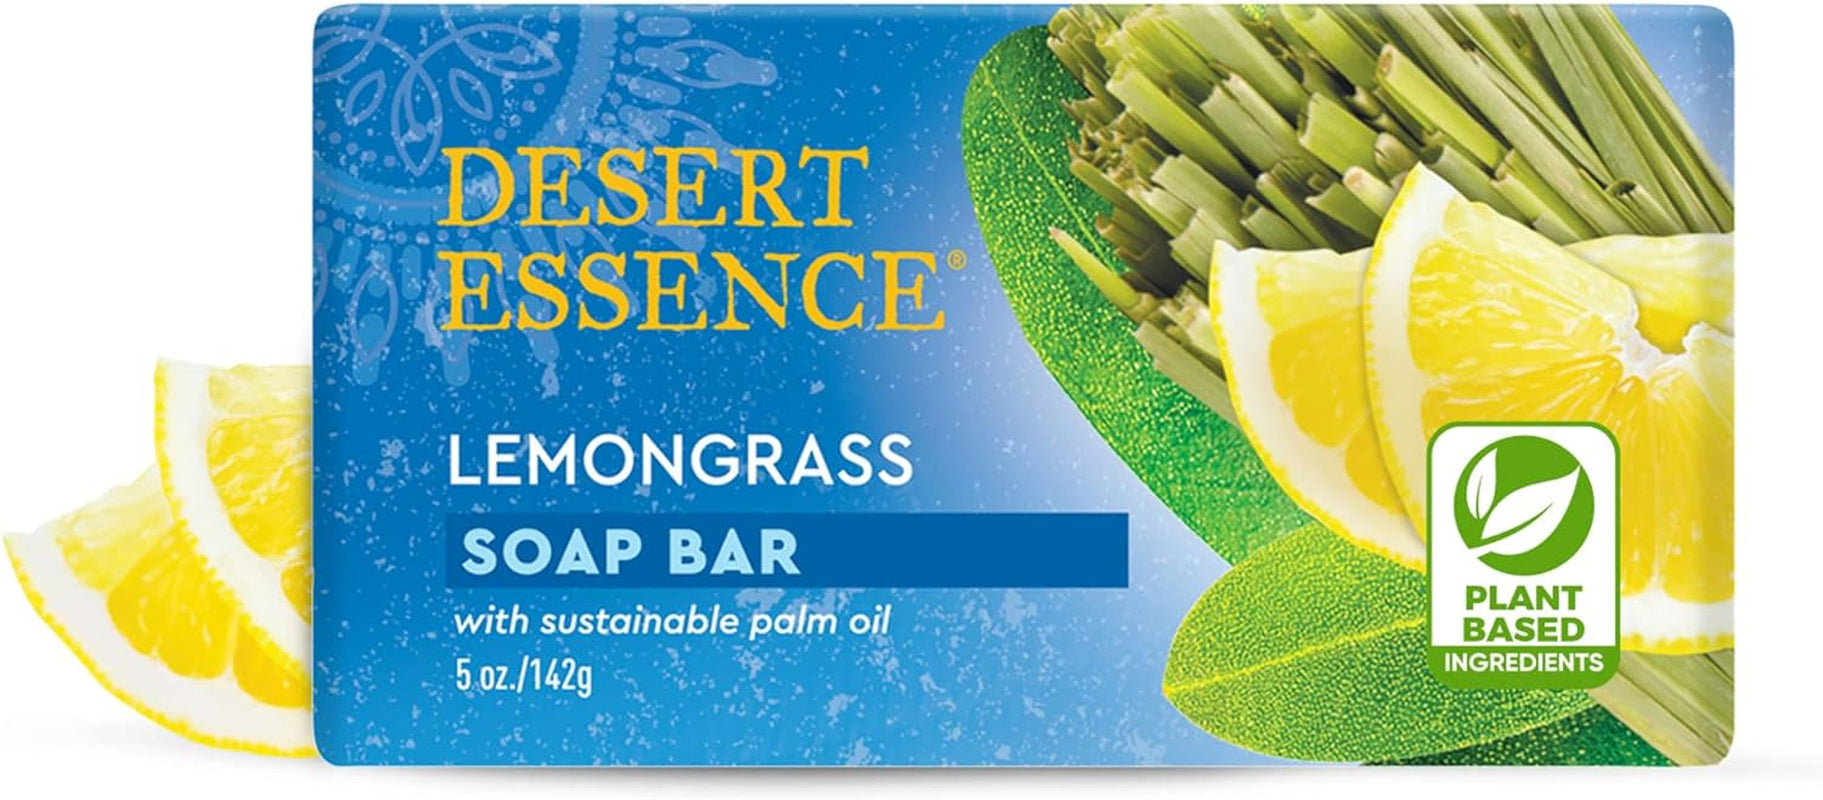 , Lemongrass Soap Bar 5 Oz (Pack of 4) - Non-Gmo Certified - Gluten Free - Vegan - Cruelty Free - Sustainable Palm Oil - Lemongrass Oil & Jojoba Oil - Cleanses, Softens & Awakens